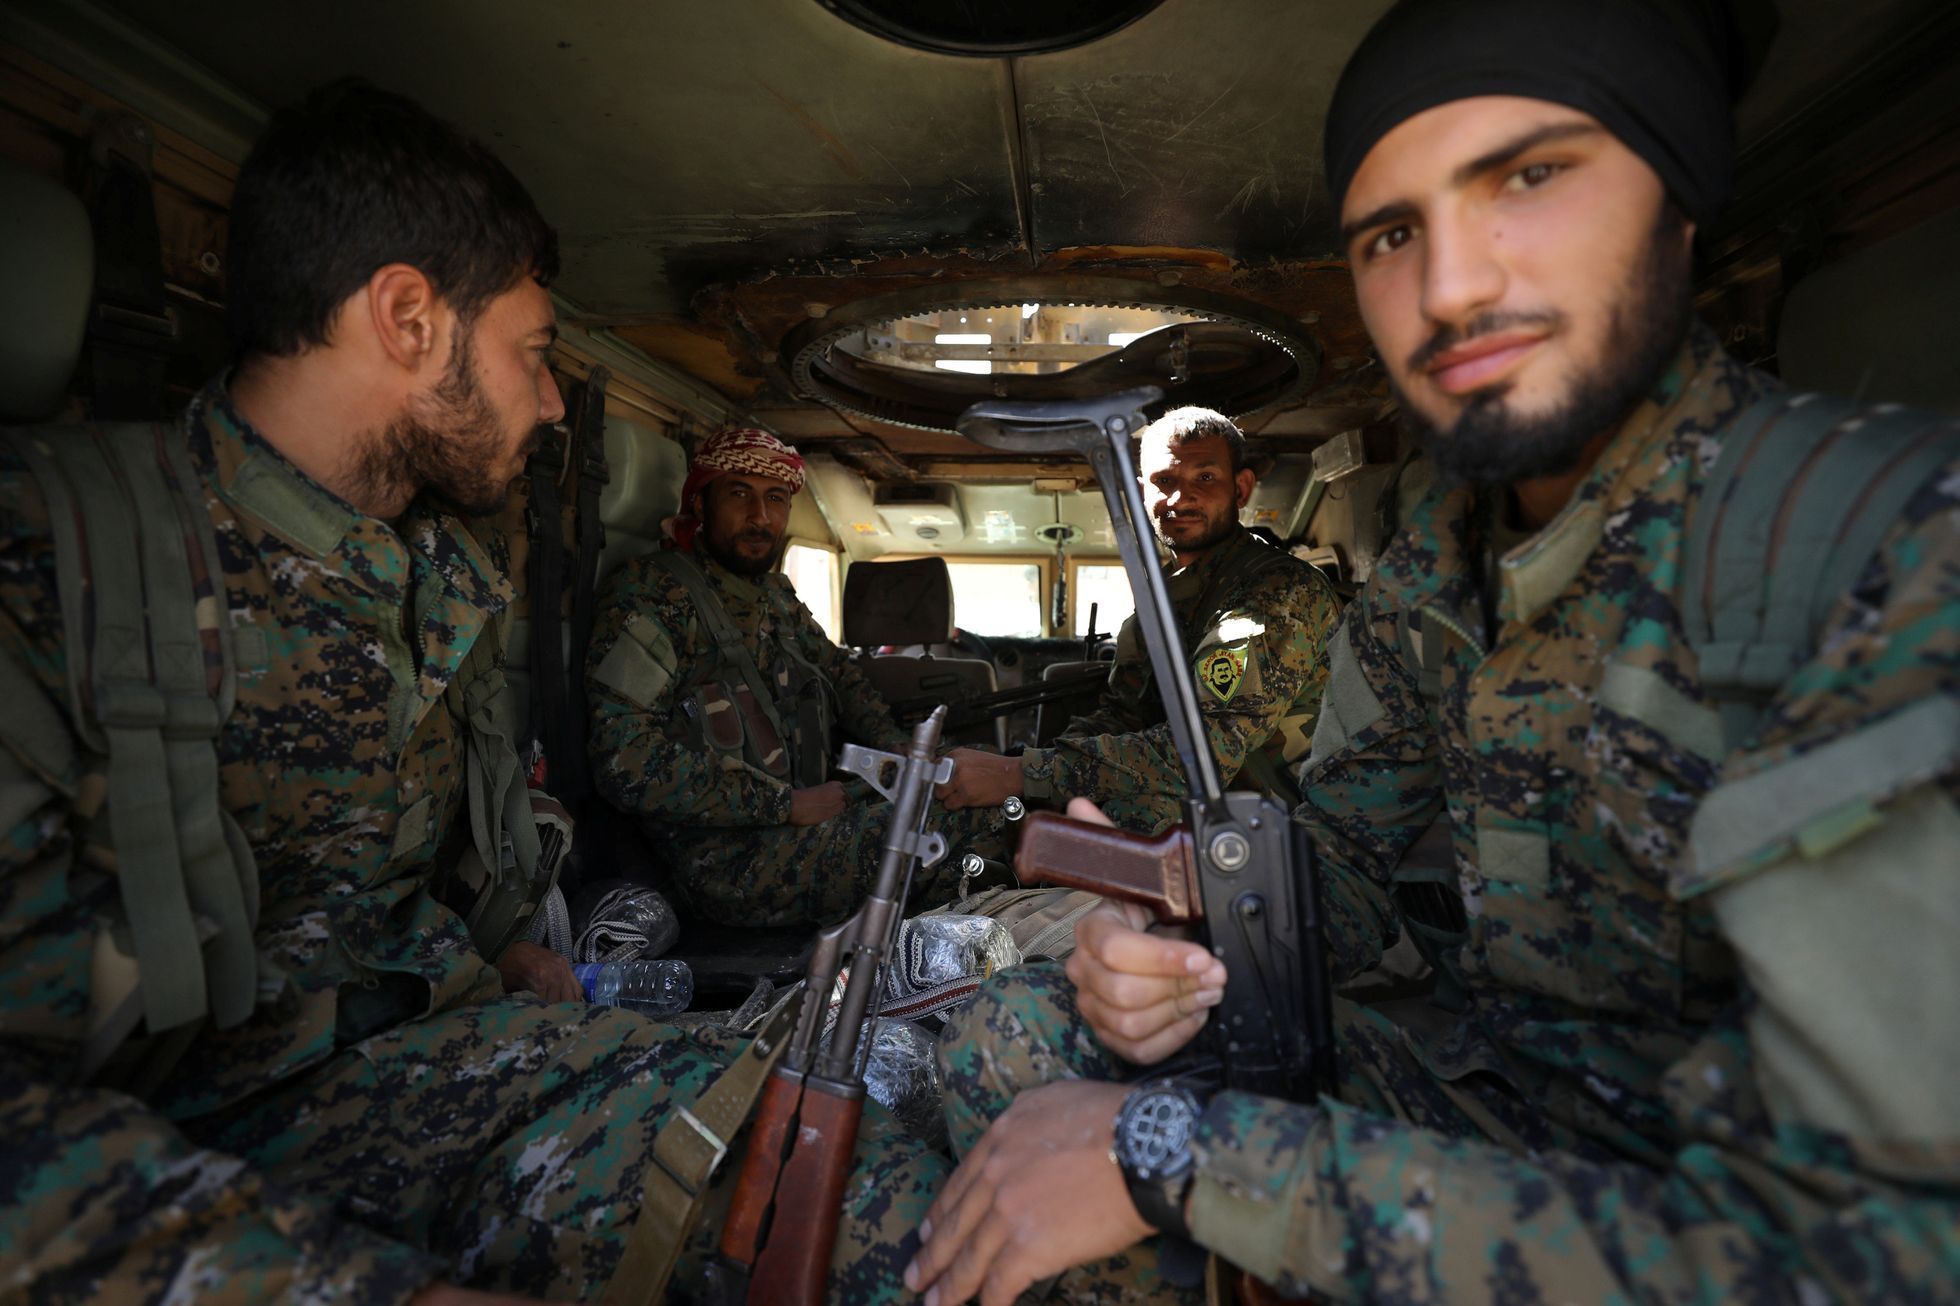 Vojáci Syrských demokratických sil (SDF) v transportéru v Rakce.